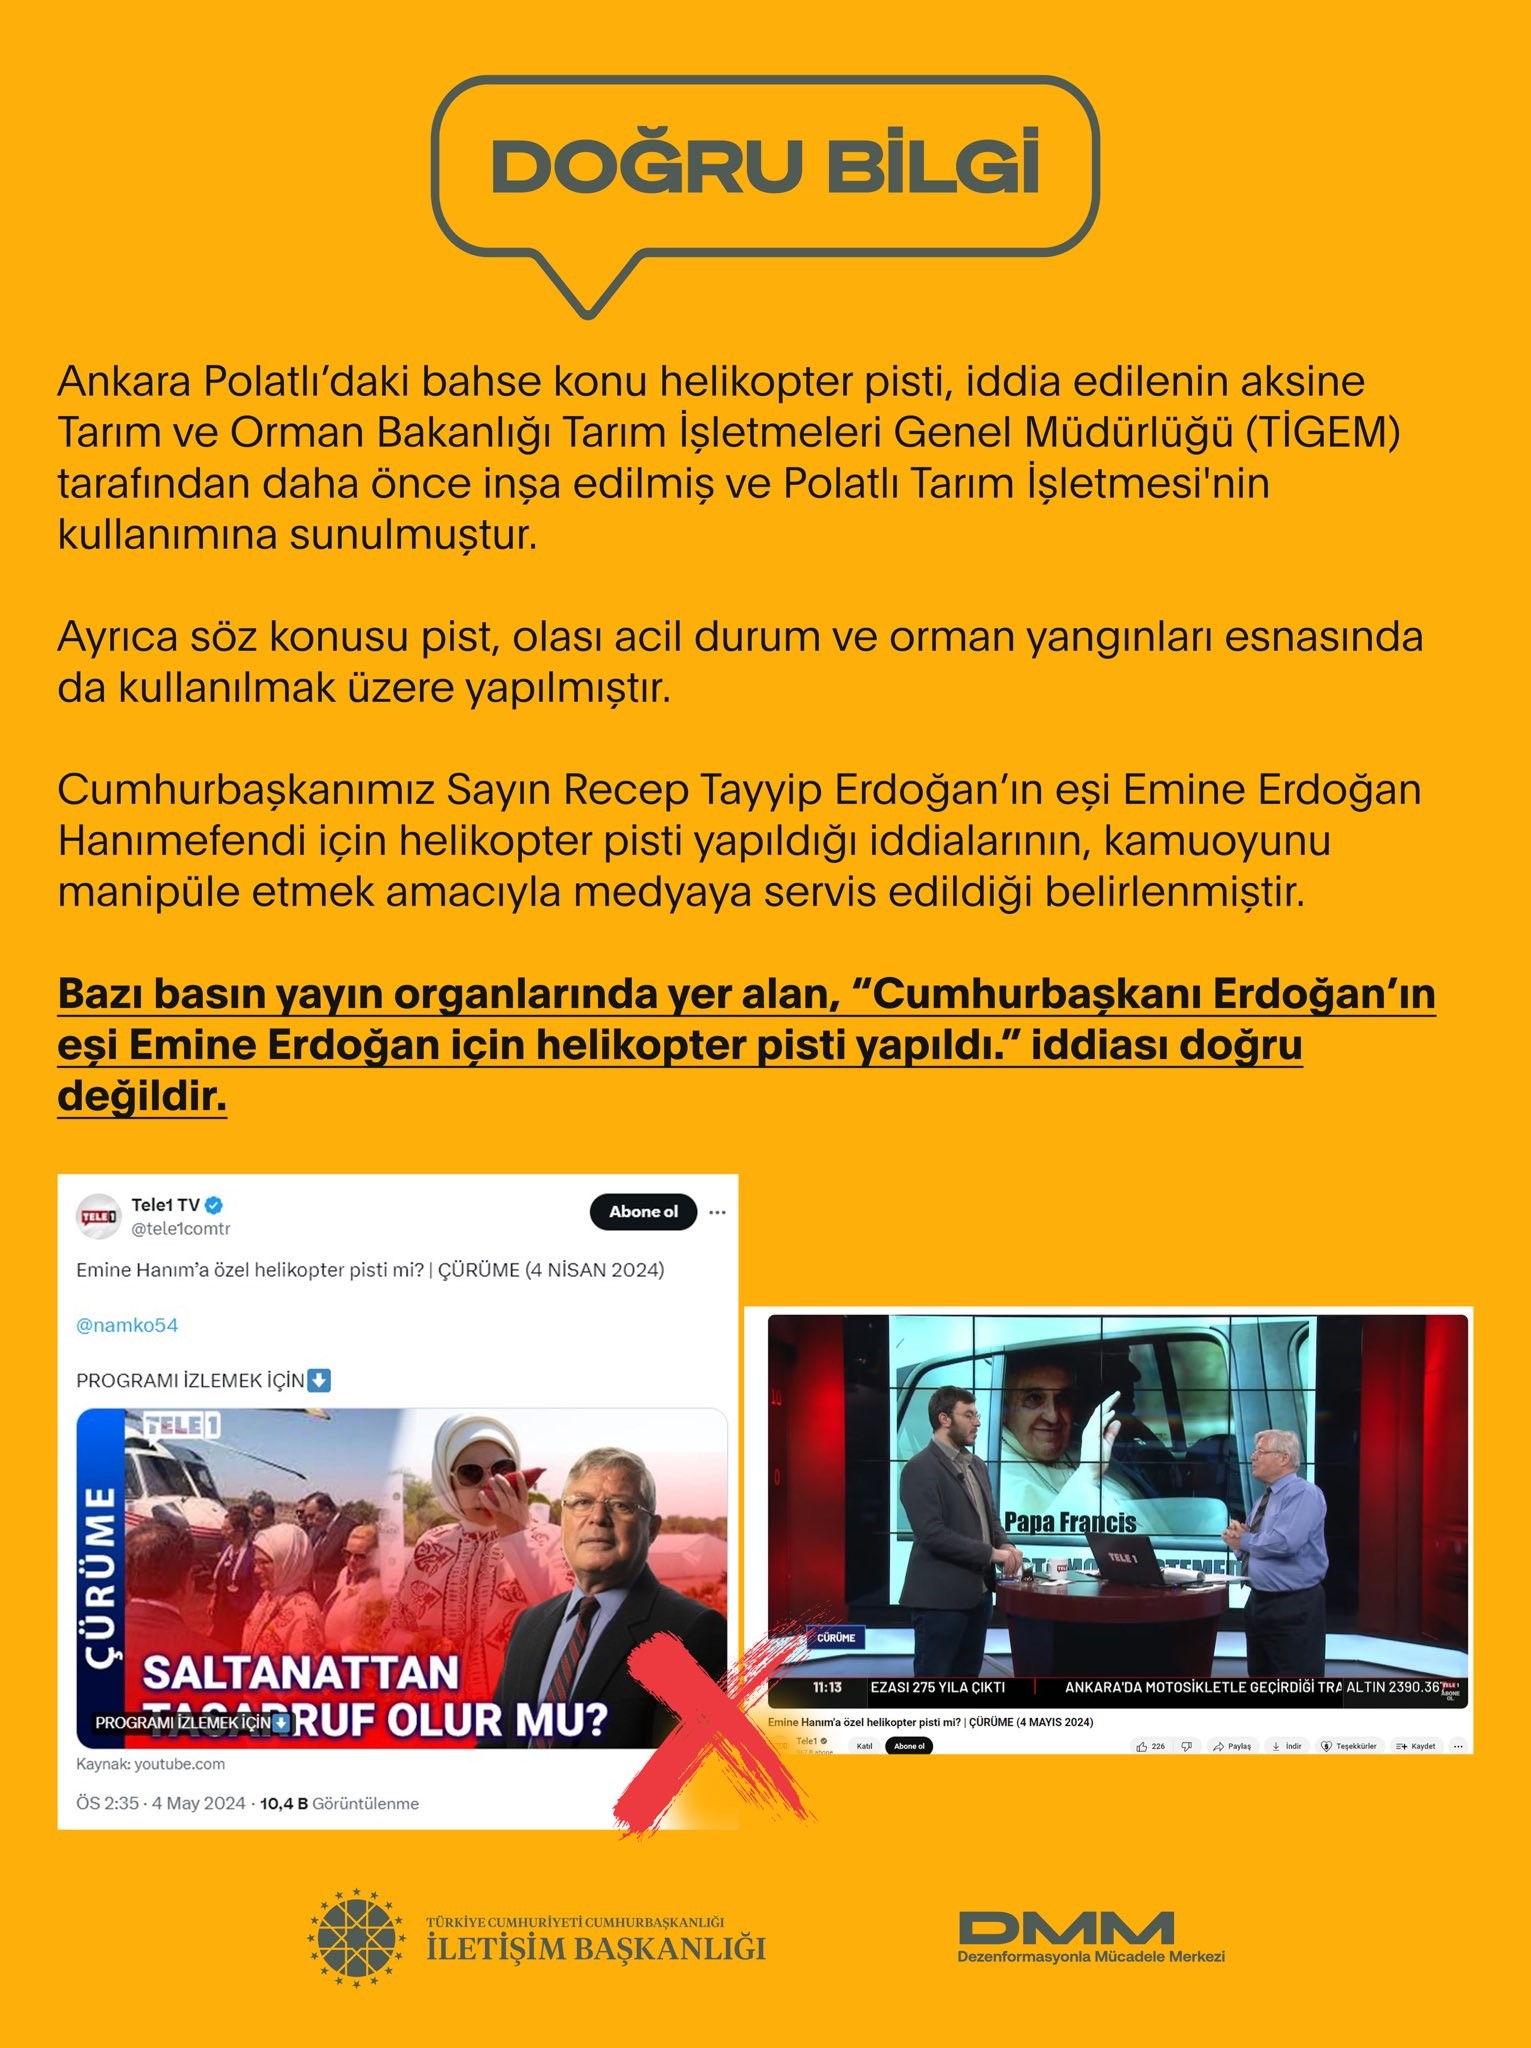 ‘Emine Erdoğan için helikopter pisti yapıldı’ iddiasına yalanlama!